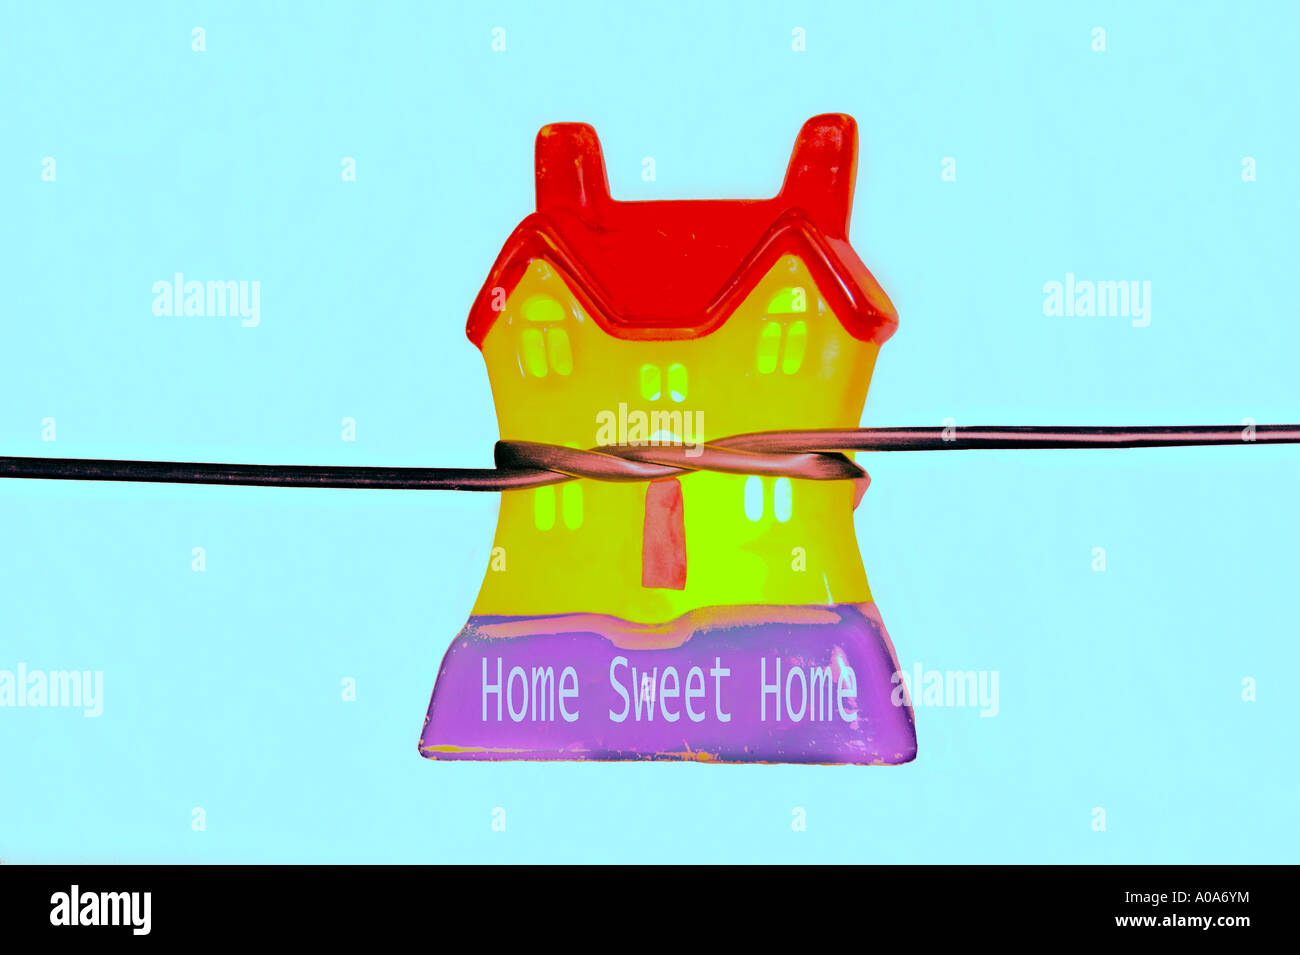 Financial Concept Image - corde serrant sur toy house Banque D'Images